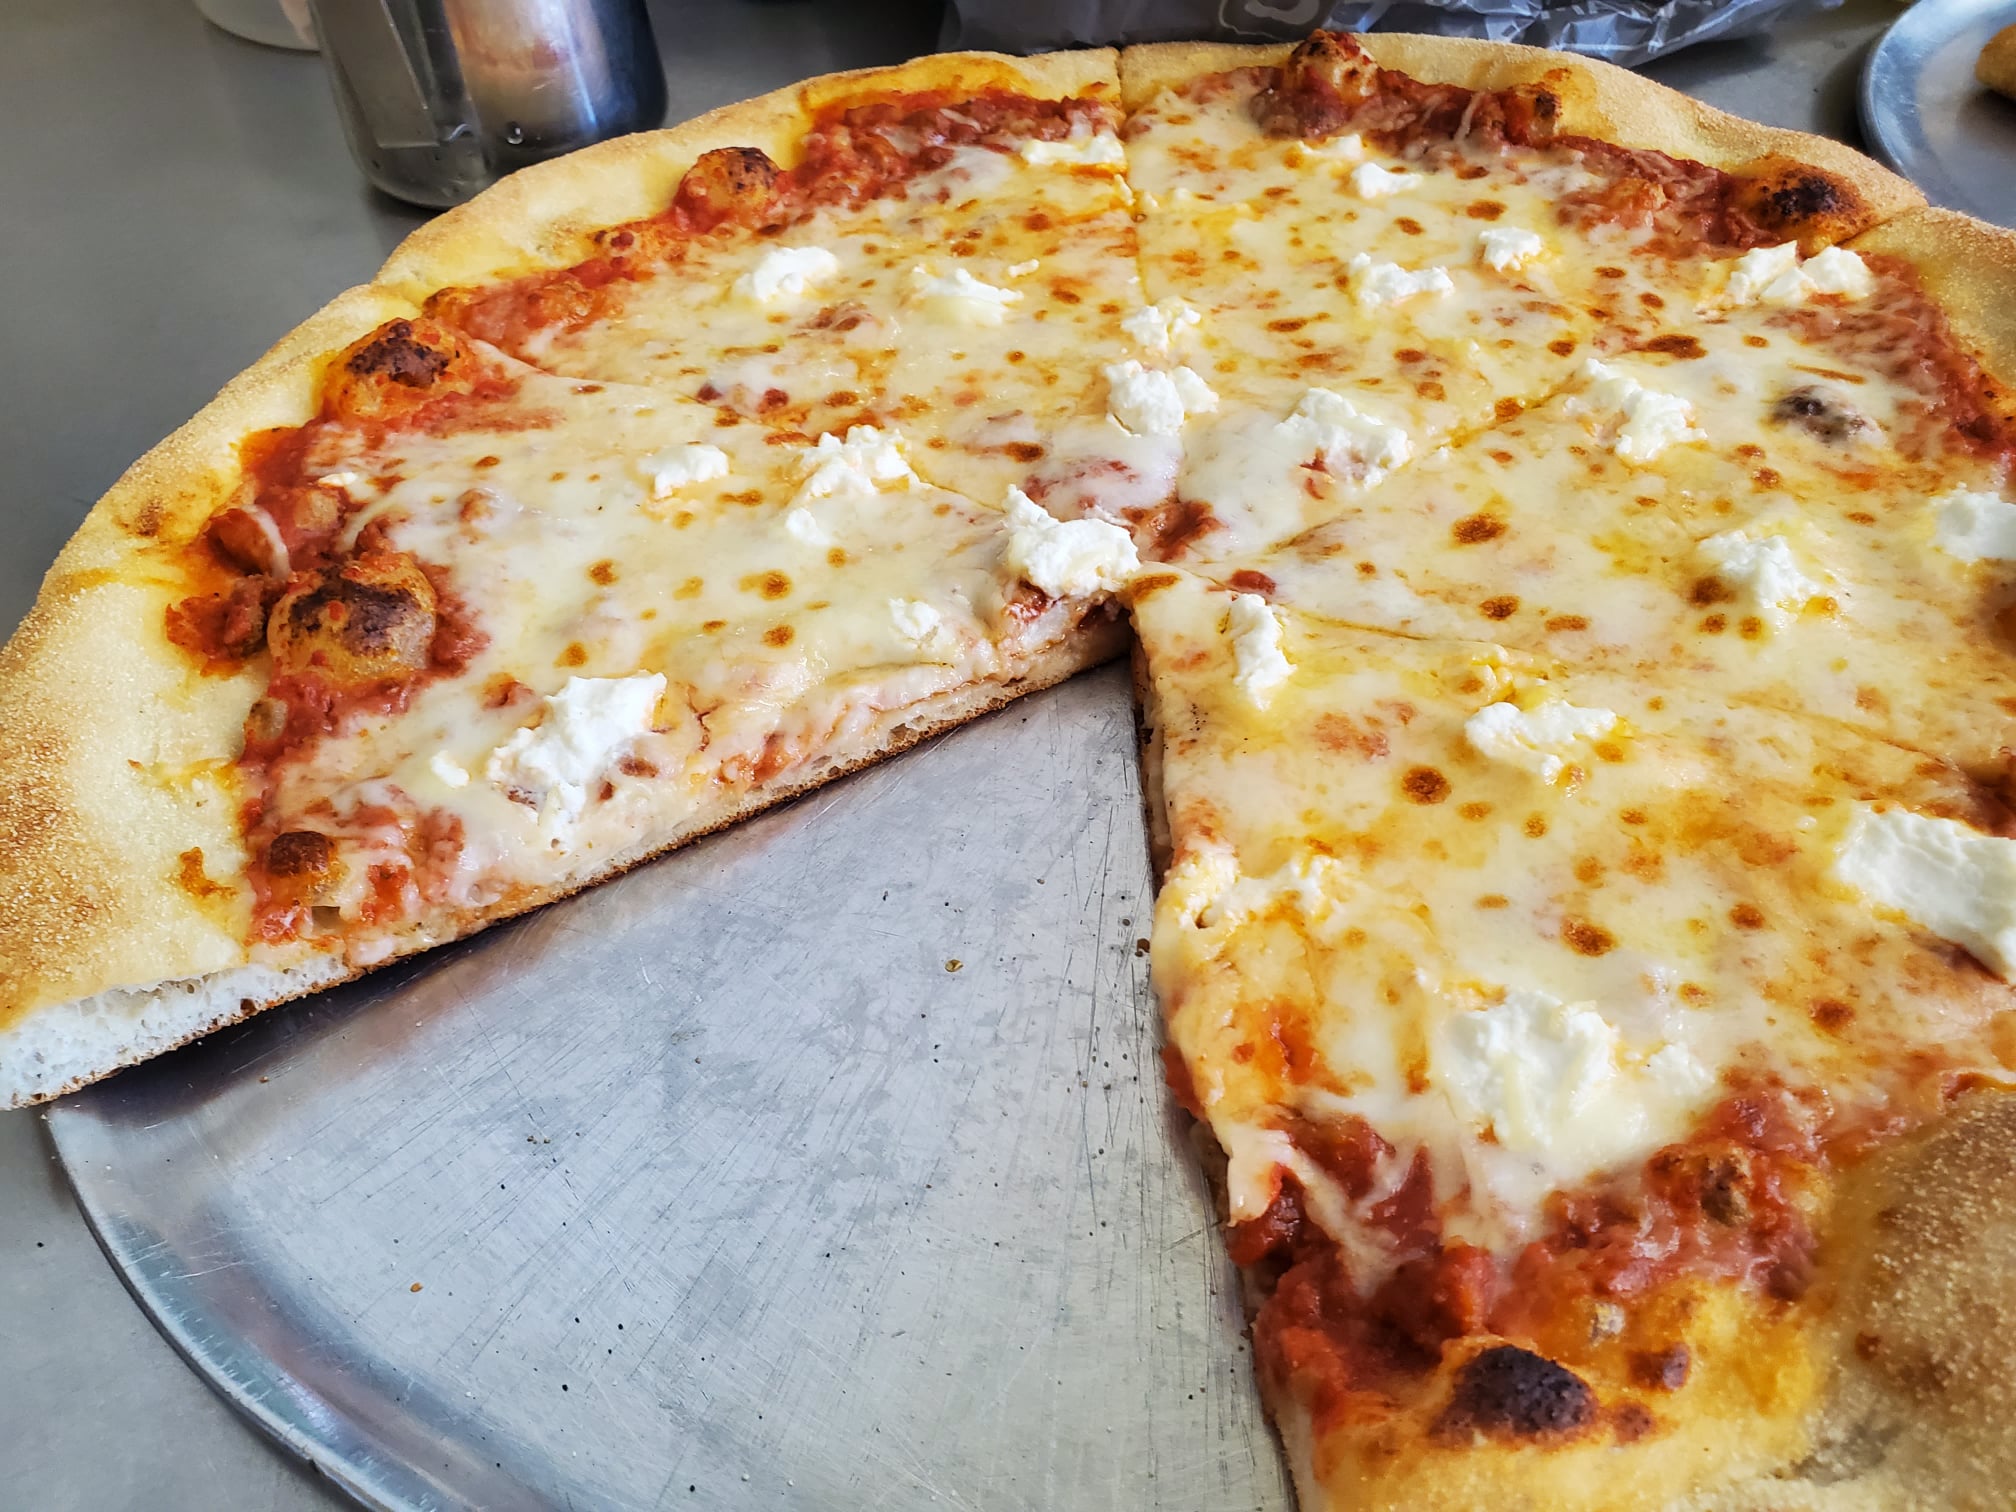 Duetto Pizza and Gelato